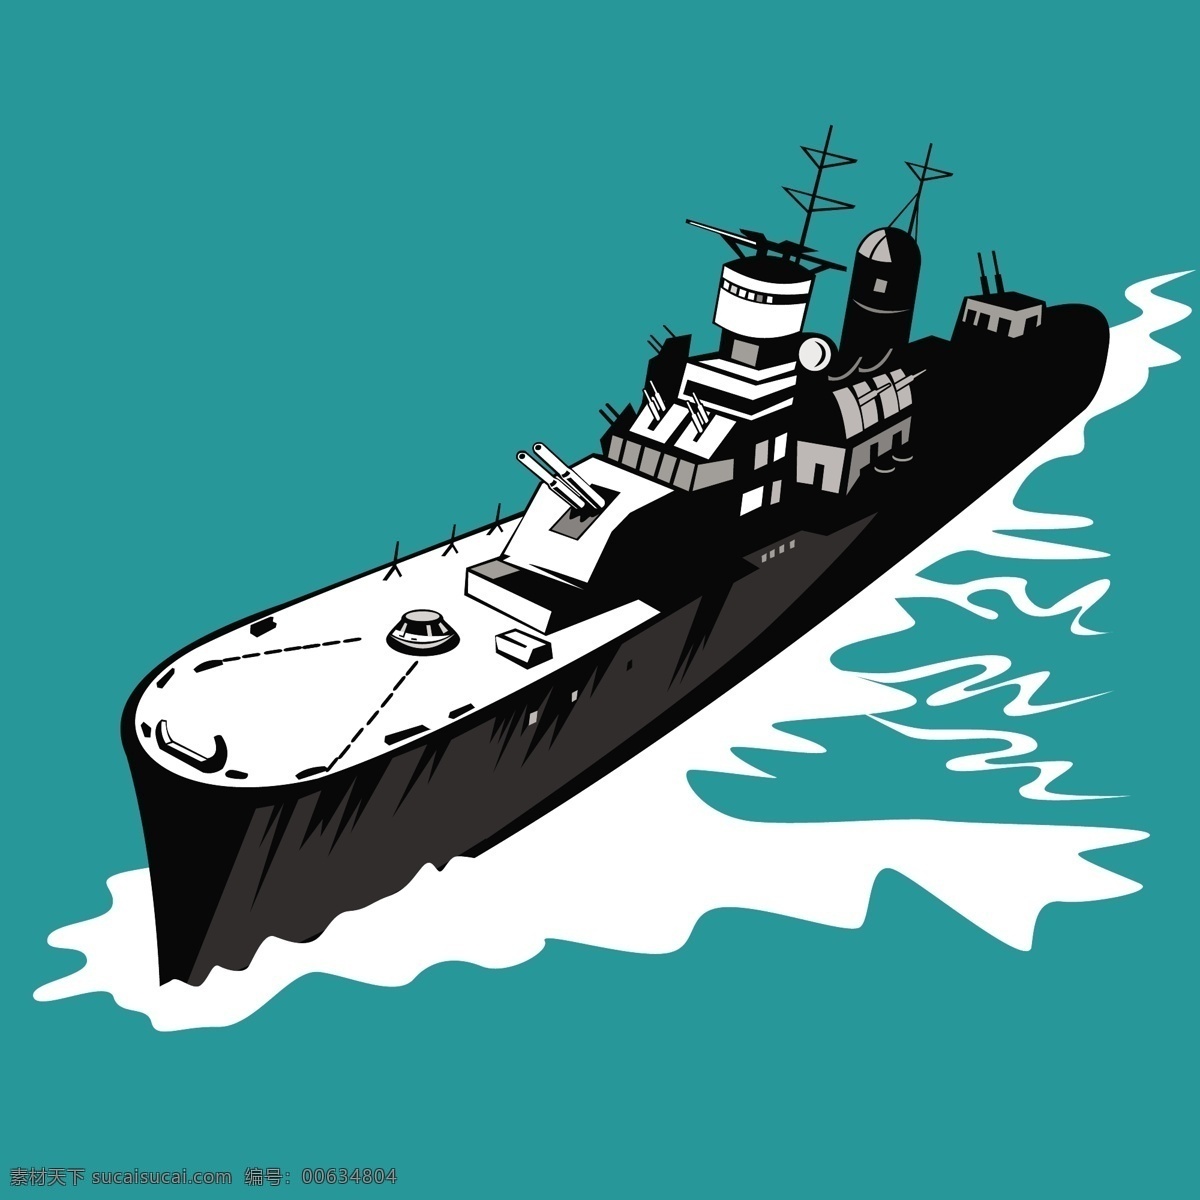 第二次世界大战 战列舰 舰 巡洋舰 复古 青色 天蓝色